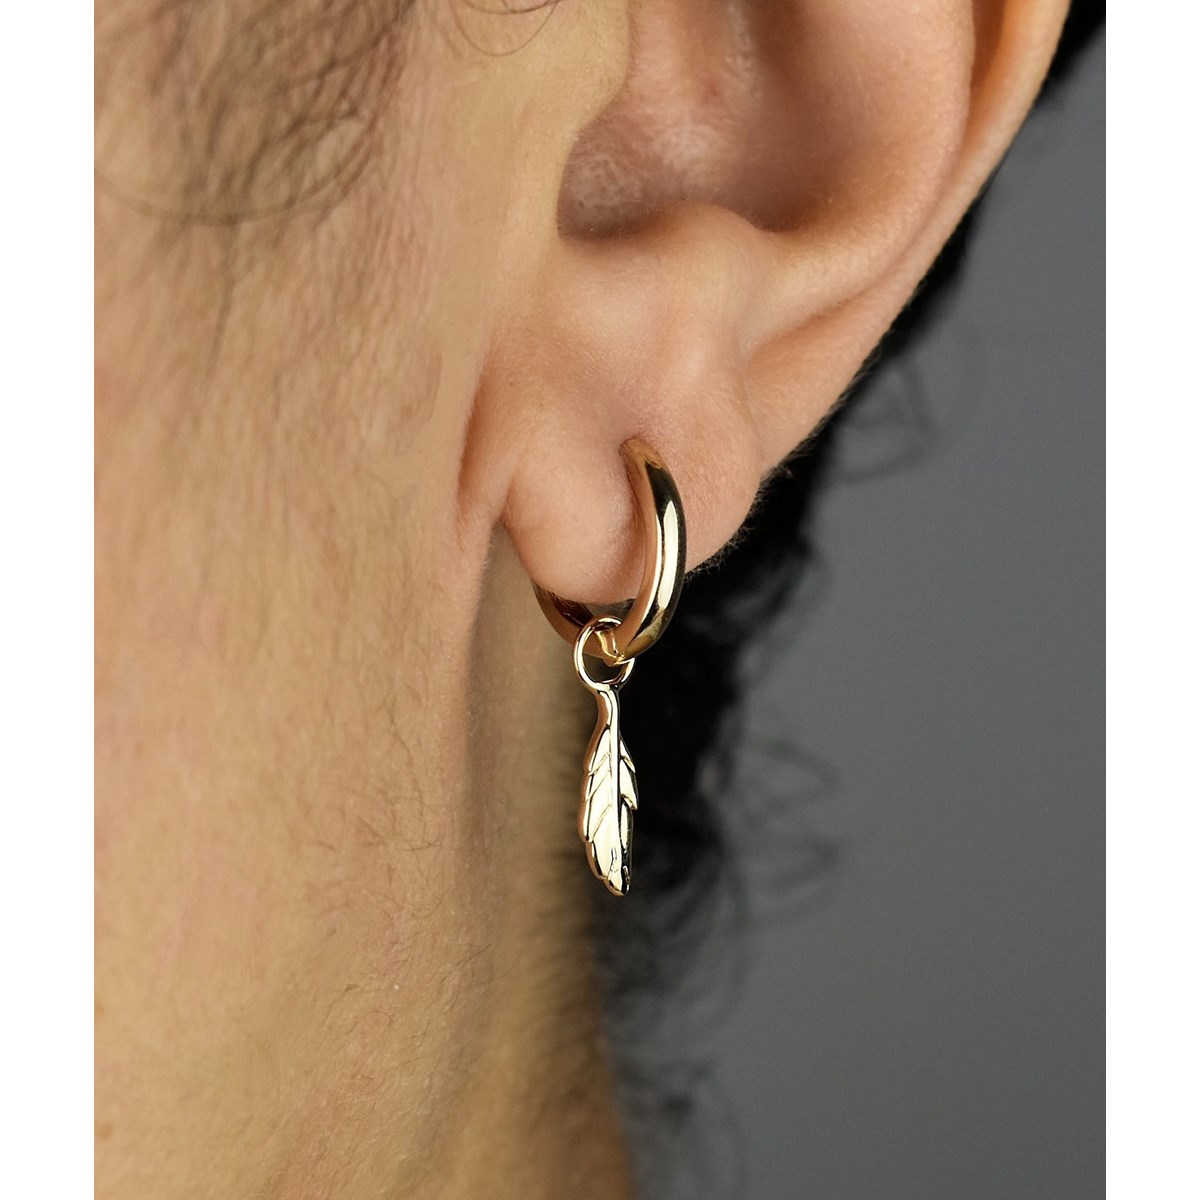 Boucles d'oreilles Mini Créoles plume pendante Plaqué or 750 3 microns - vue 2